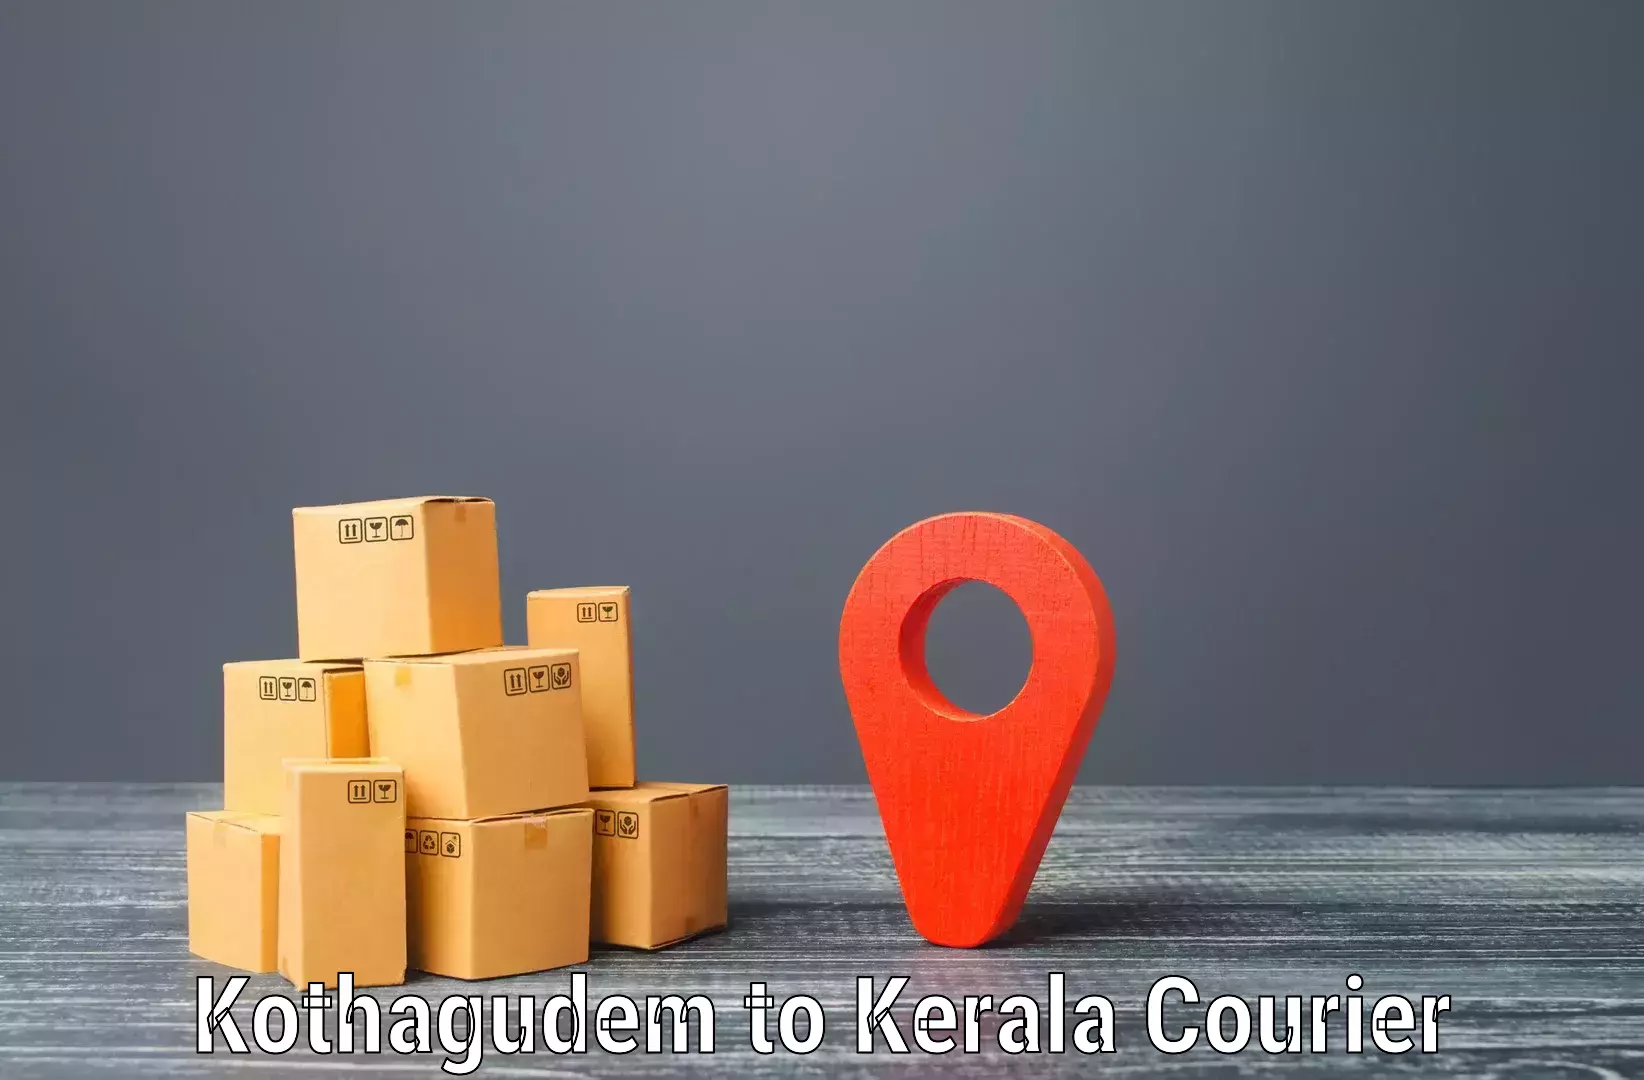 Door-to-door shipment Kothagudem to Trivandrum